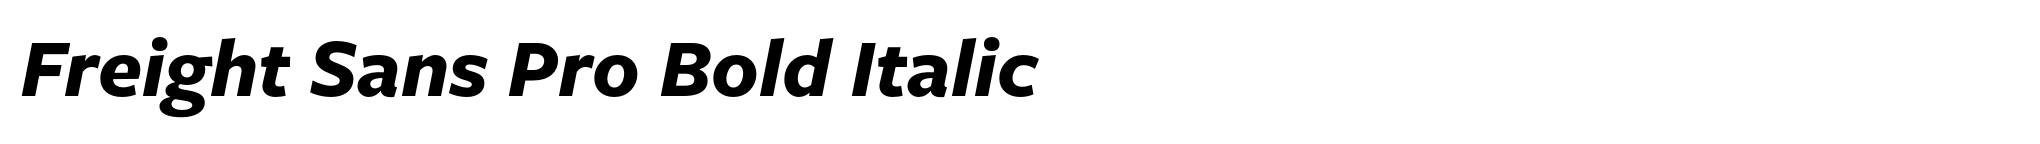 Freight Sans Pro Bold Italic image